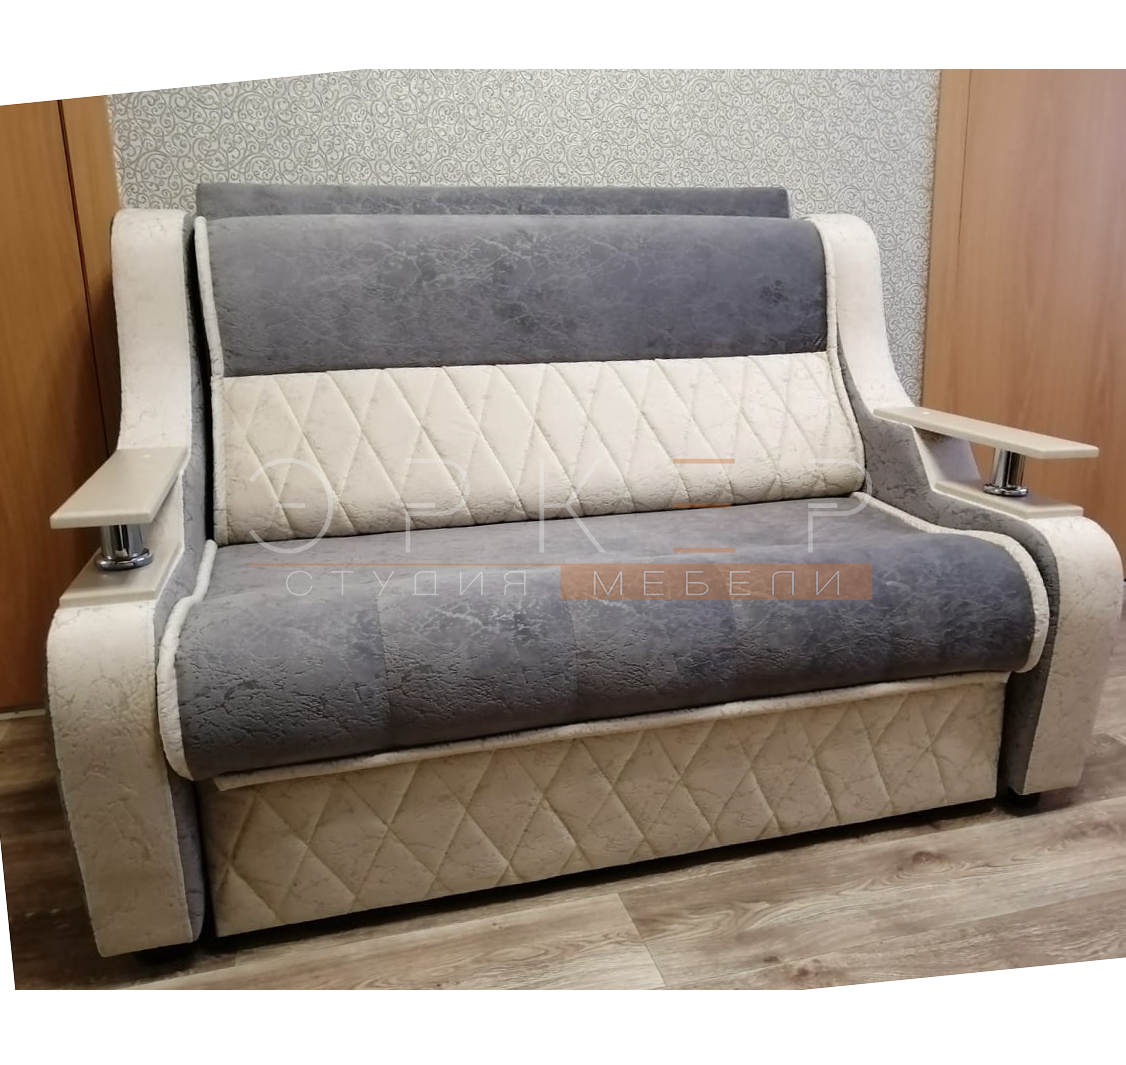 Раскладные кресла-кровати купить в Барнауле от производителя на Малахова 86в "Эркер студия мебели" тел. 8-902-142-0865